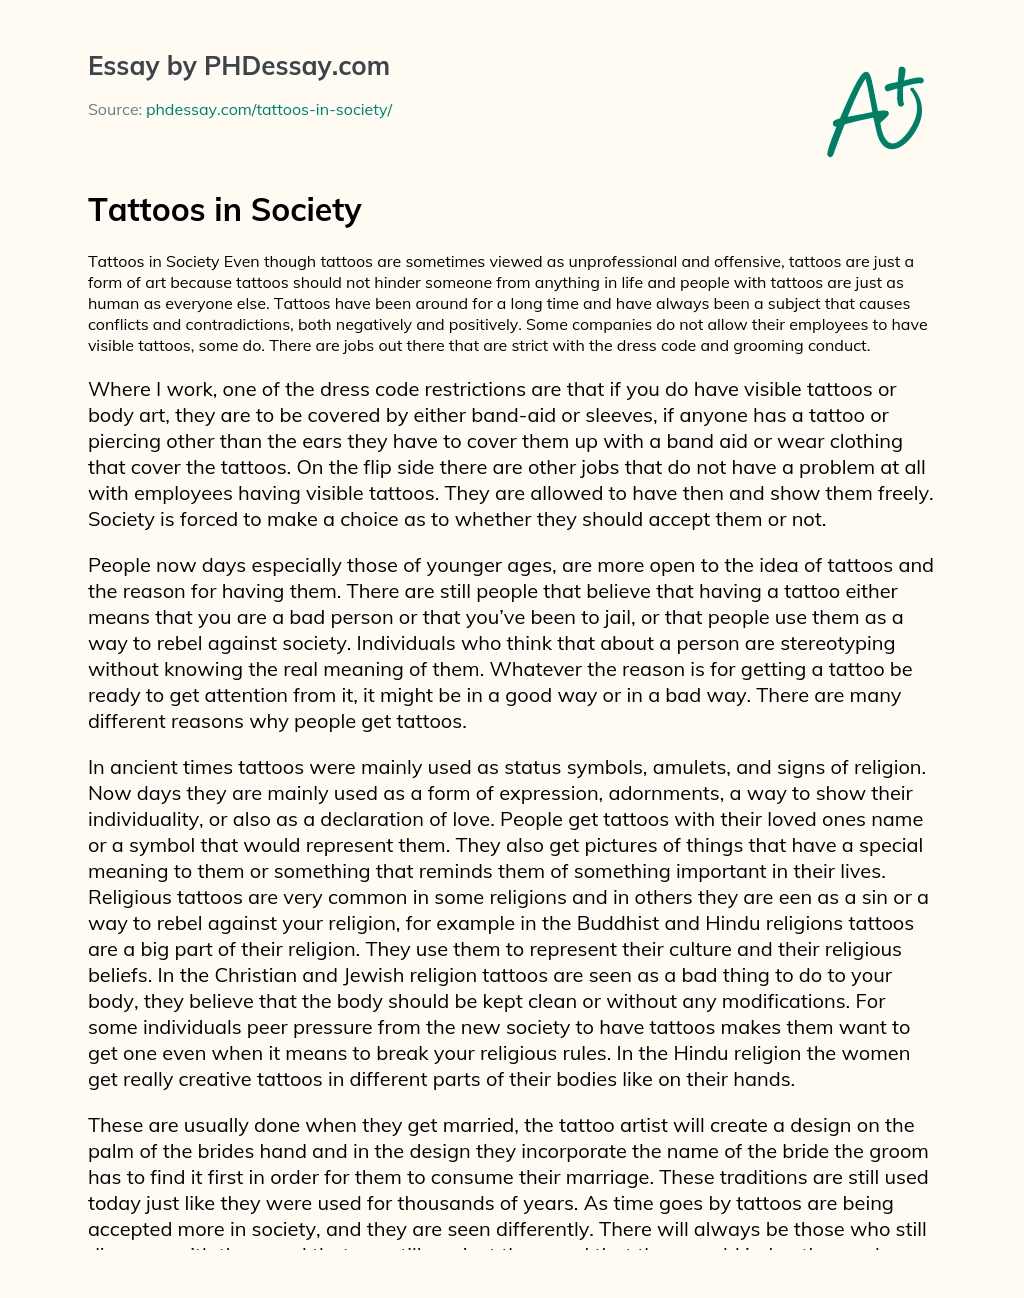 Tattoos in Society essay